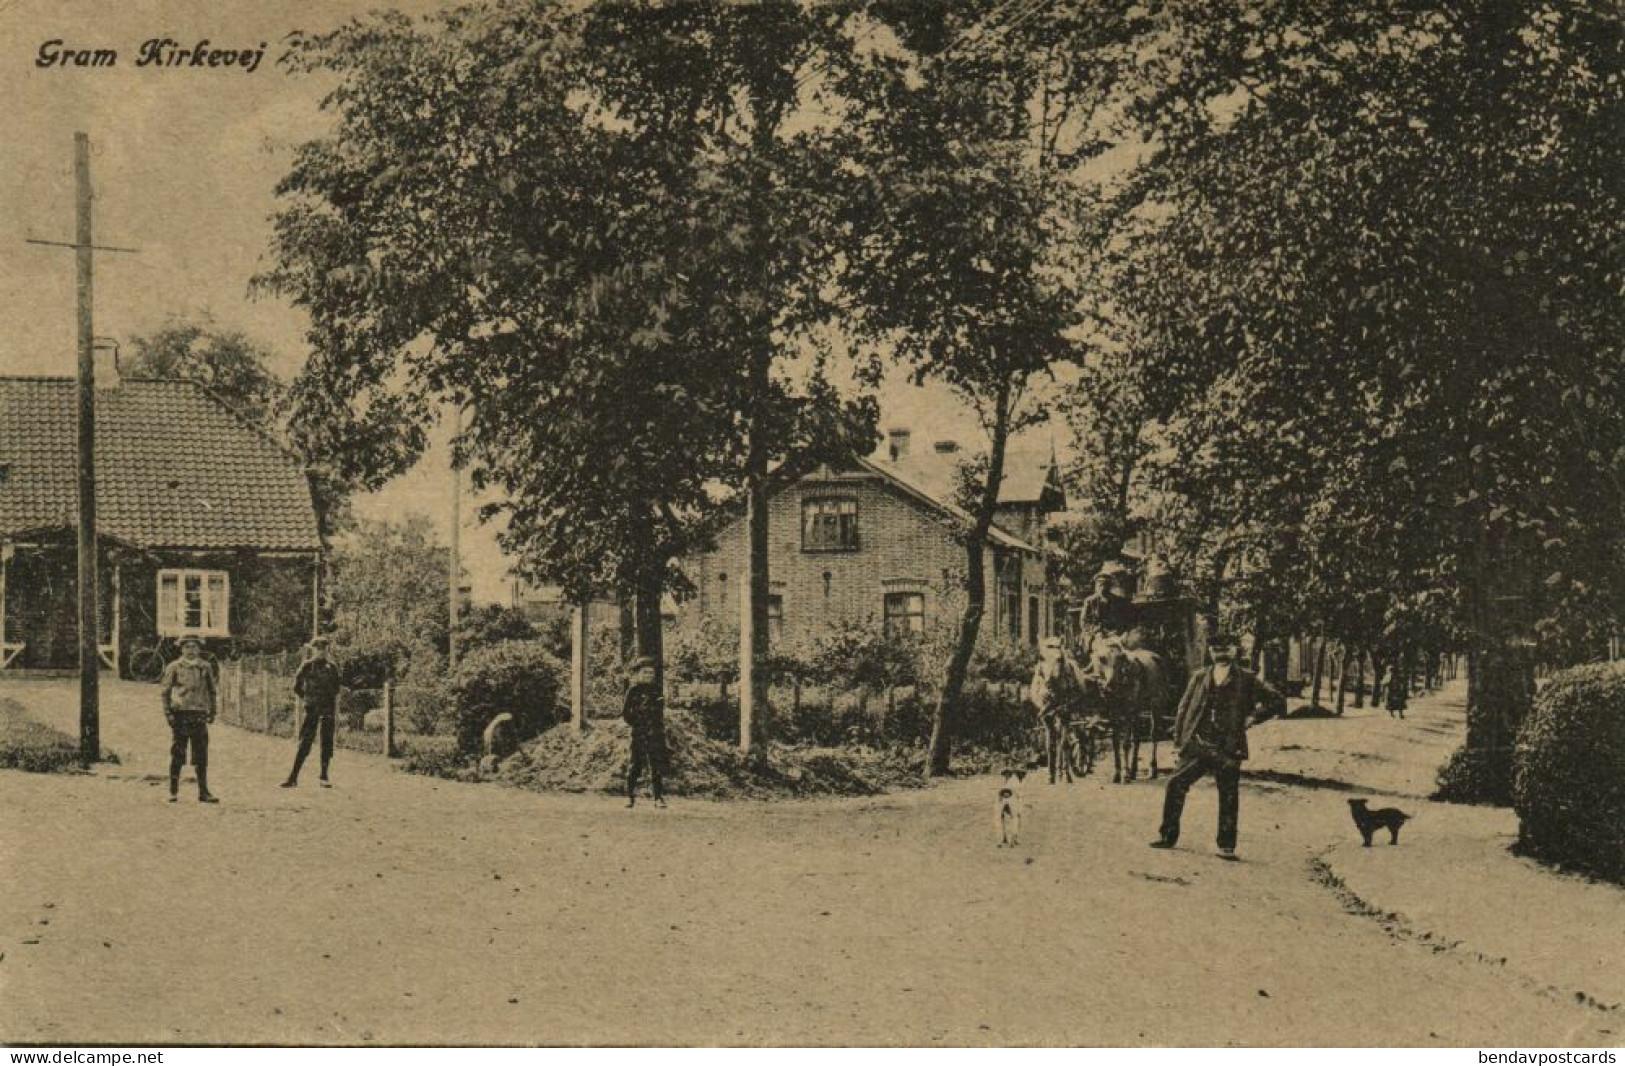 Denmark, GRAM GRAMBY, Kirkevej, Street Scene (1910s) Postcard - Danemark